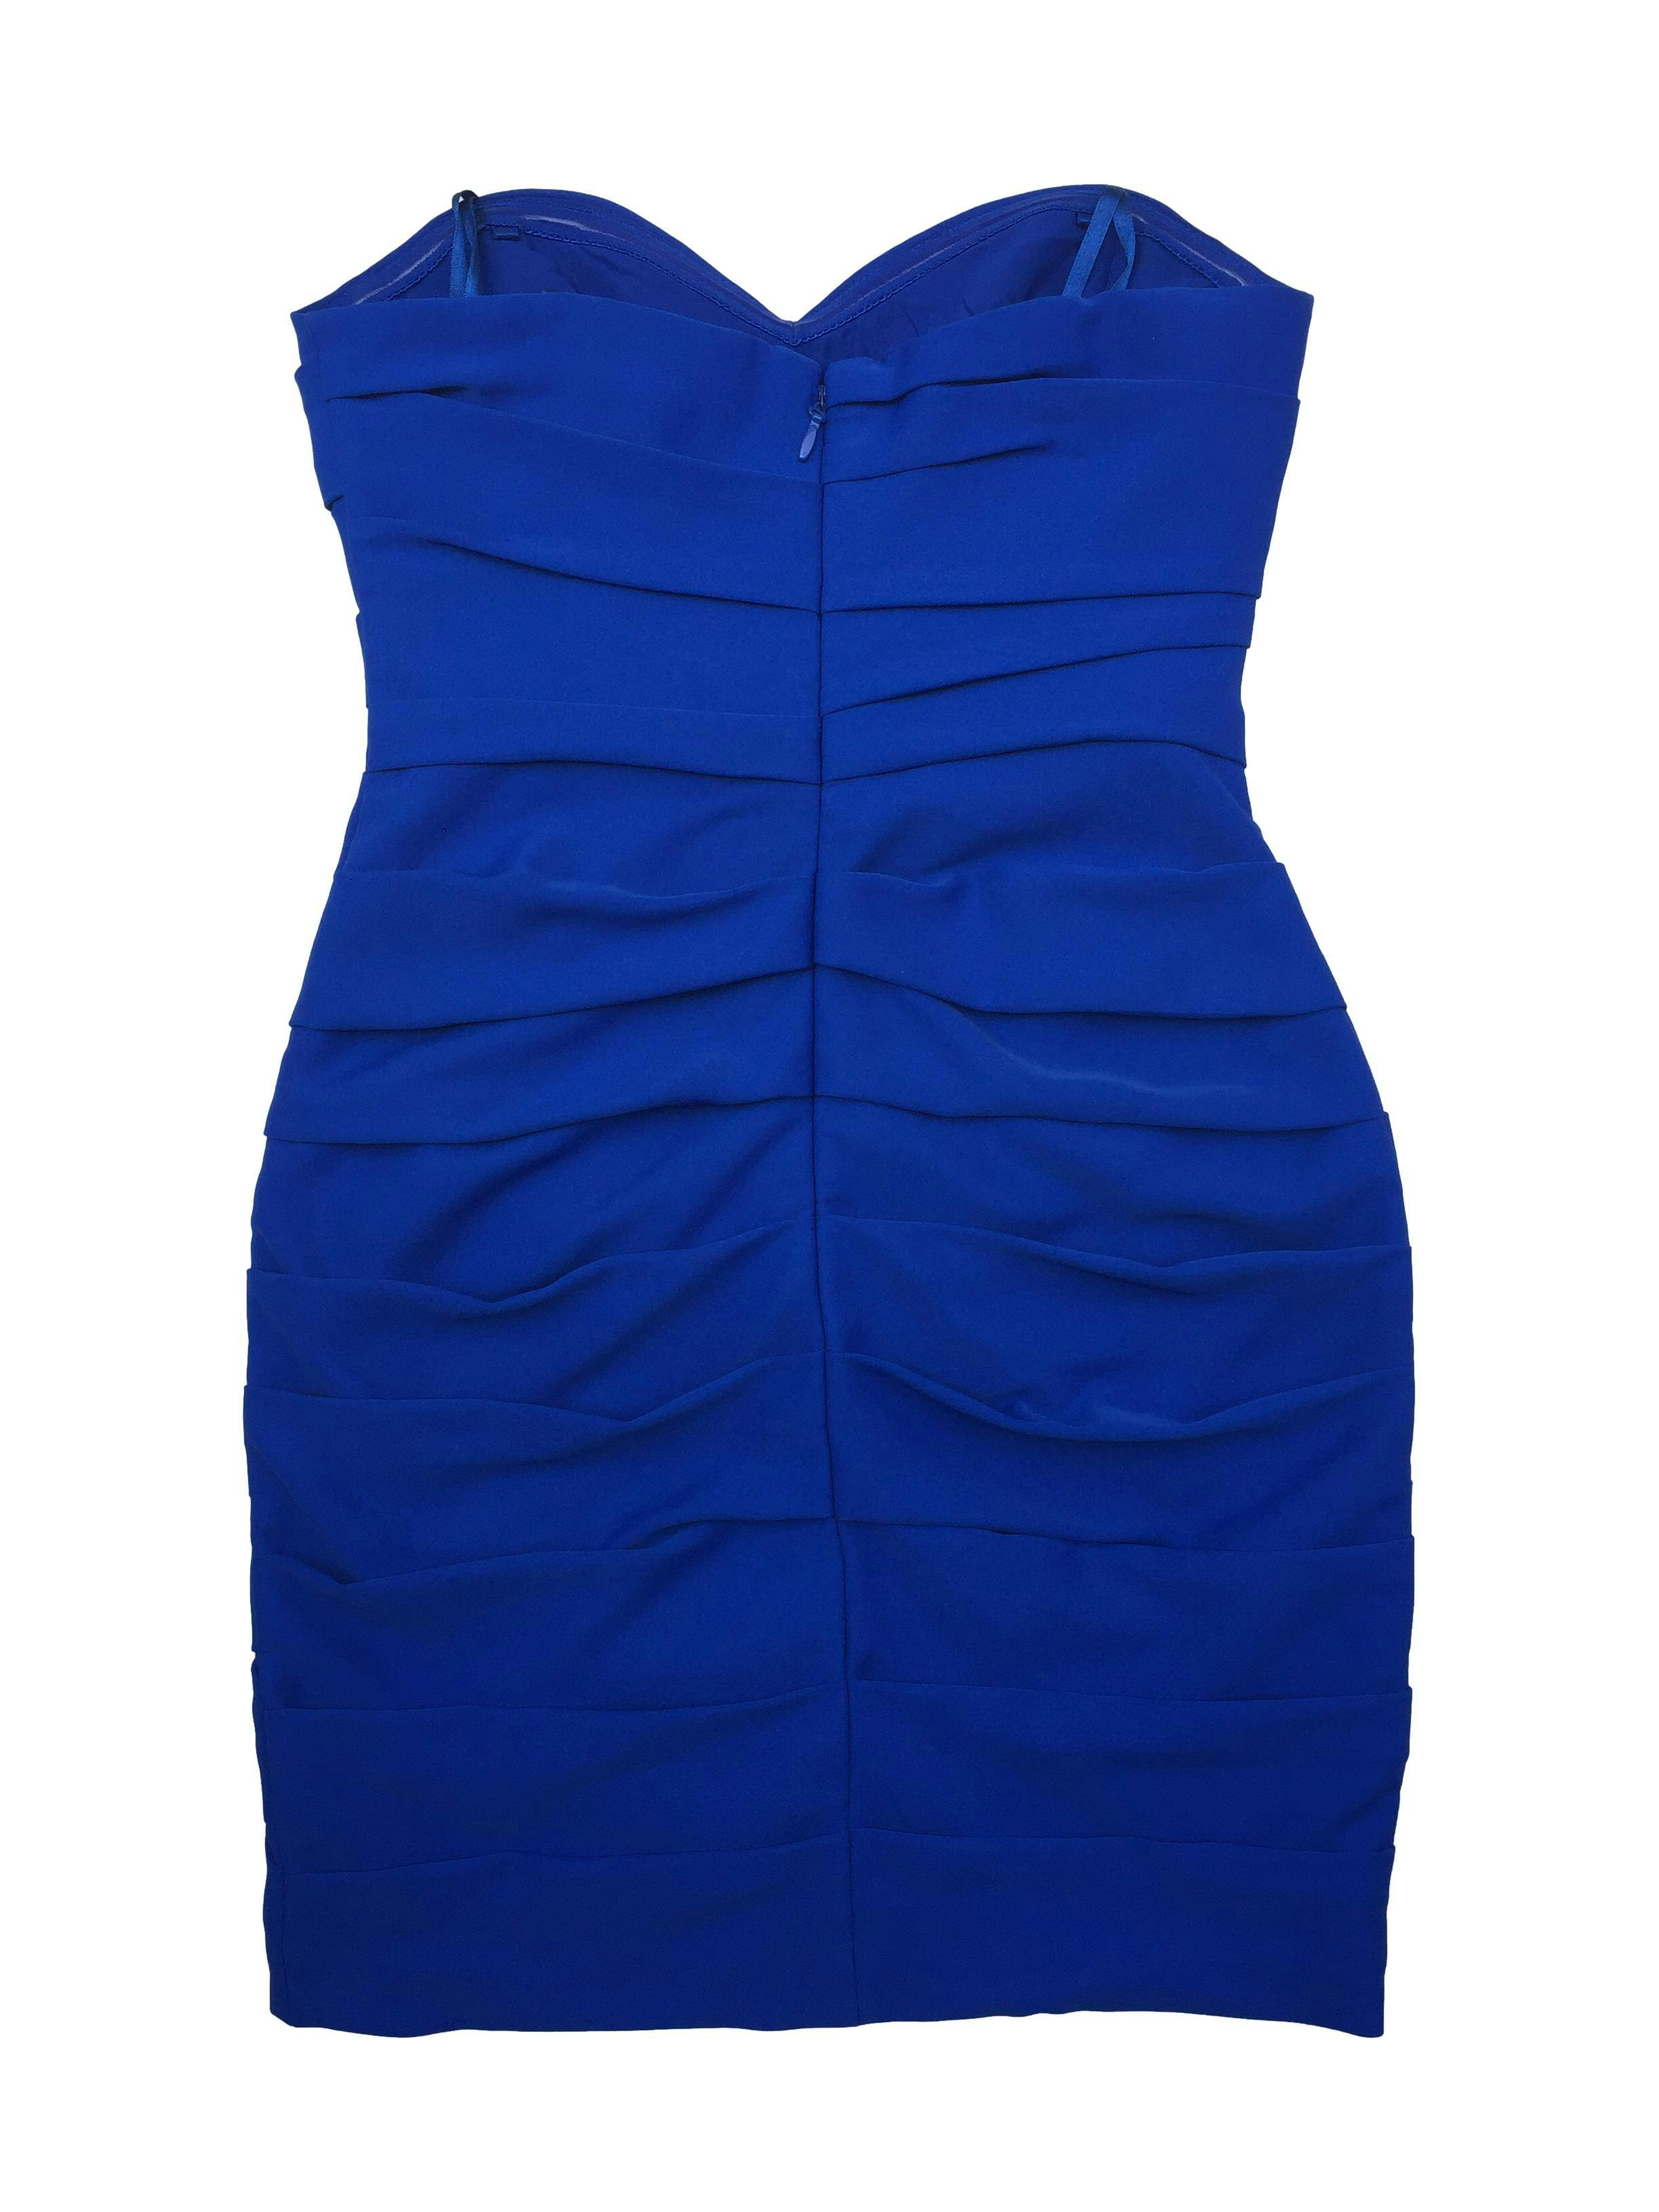 Vestido BgbgMaxazria strapless azul, escote corazón, cuerpo drapeado, es forrado y tiene cierre en la espalda, tela tipo lycra gruesa. Busto 88cm Cintura 70cm Largo 72cm 